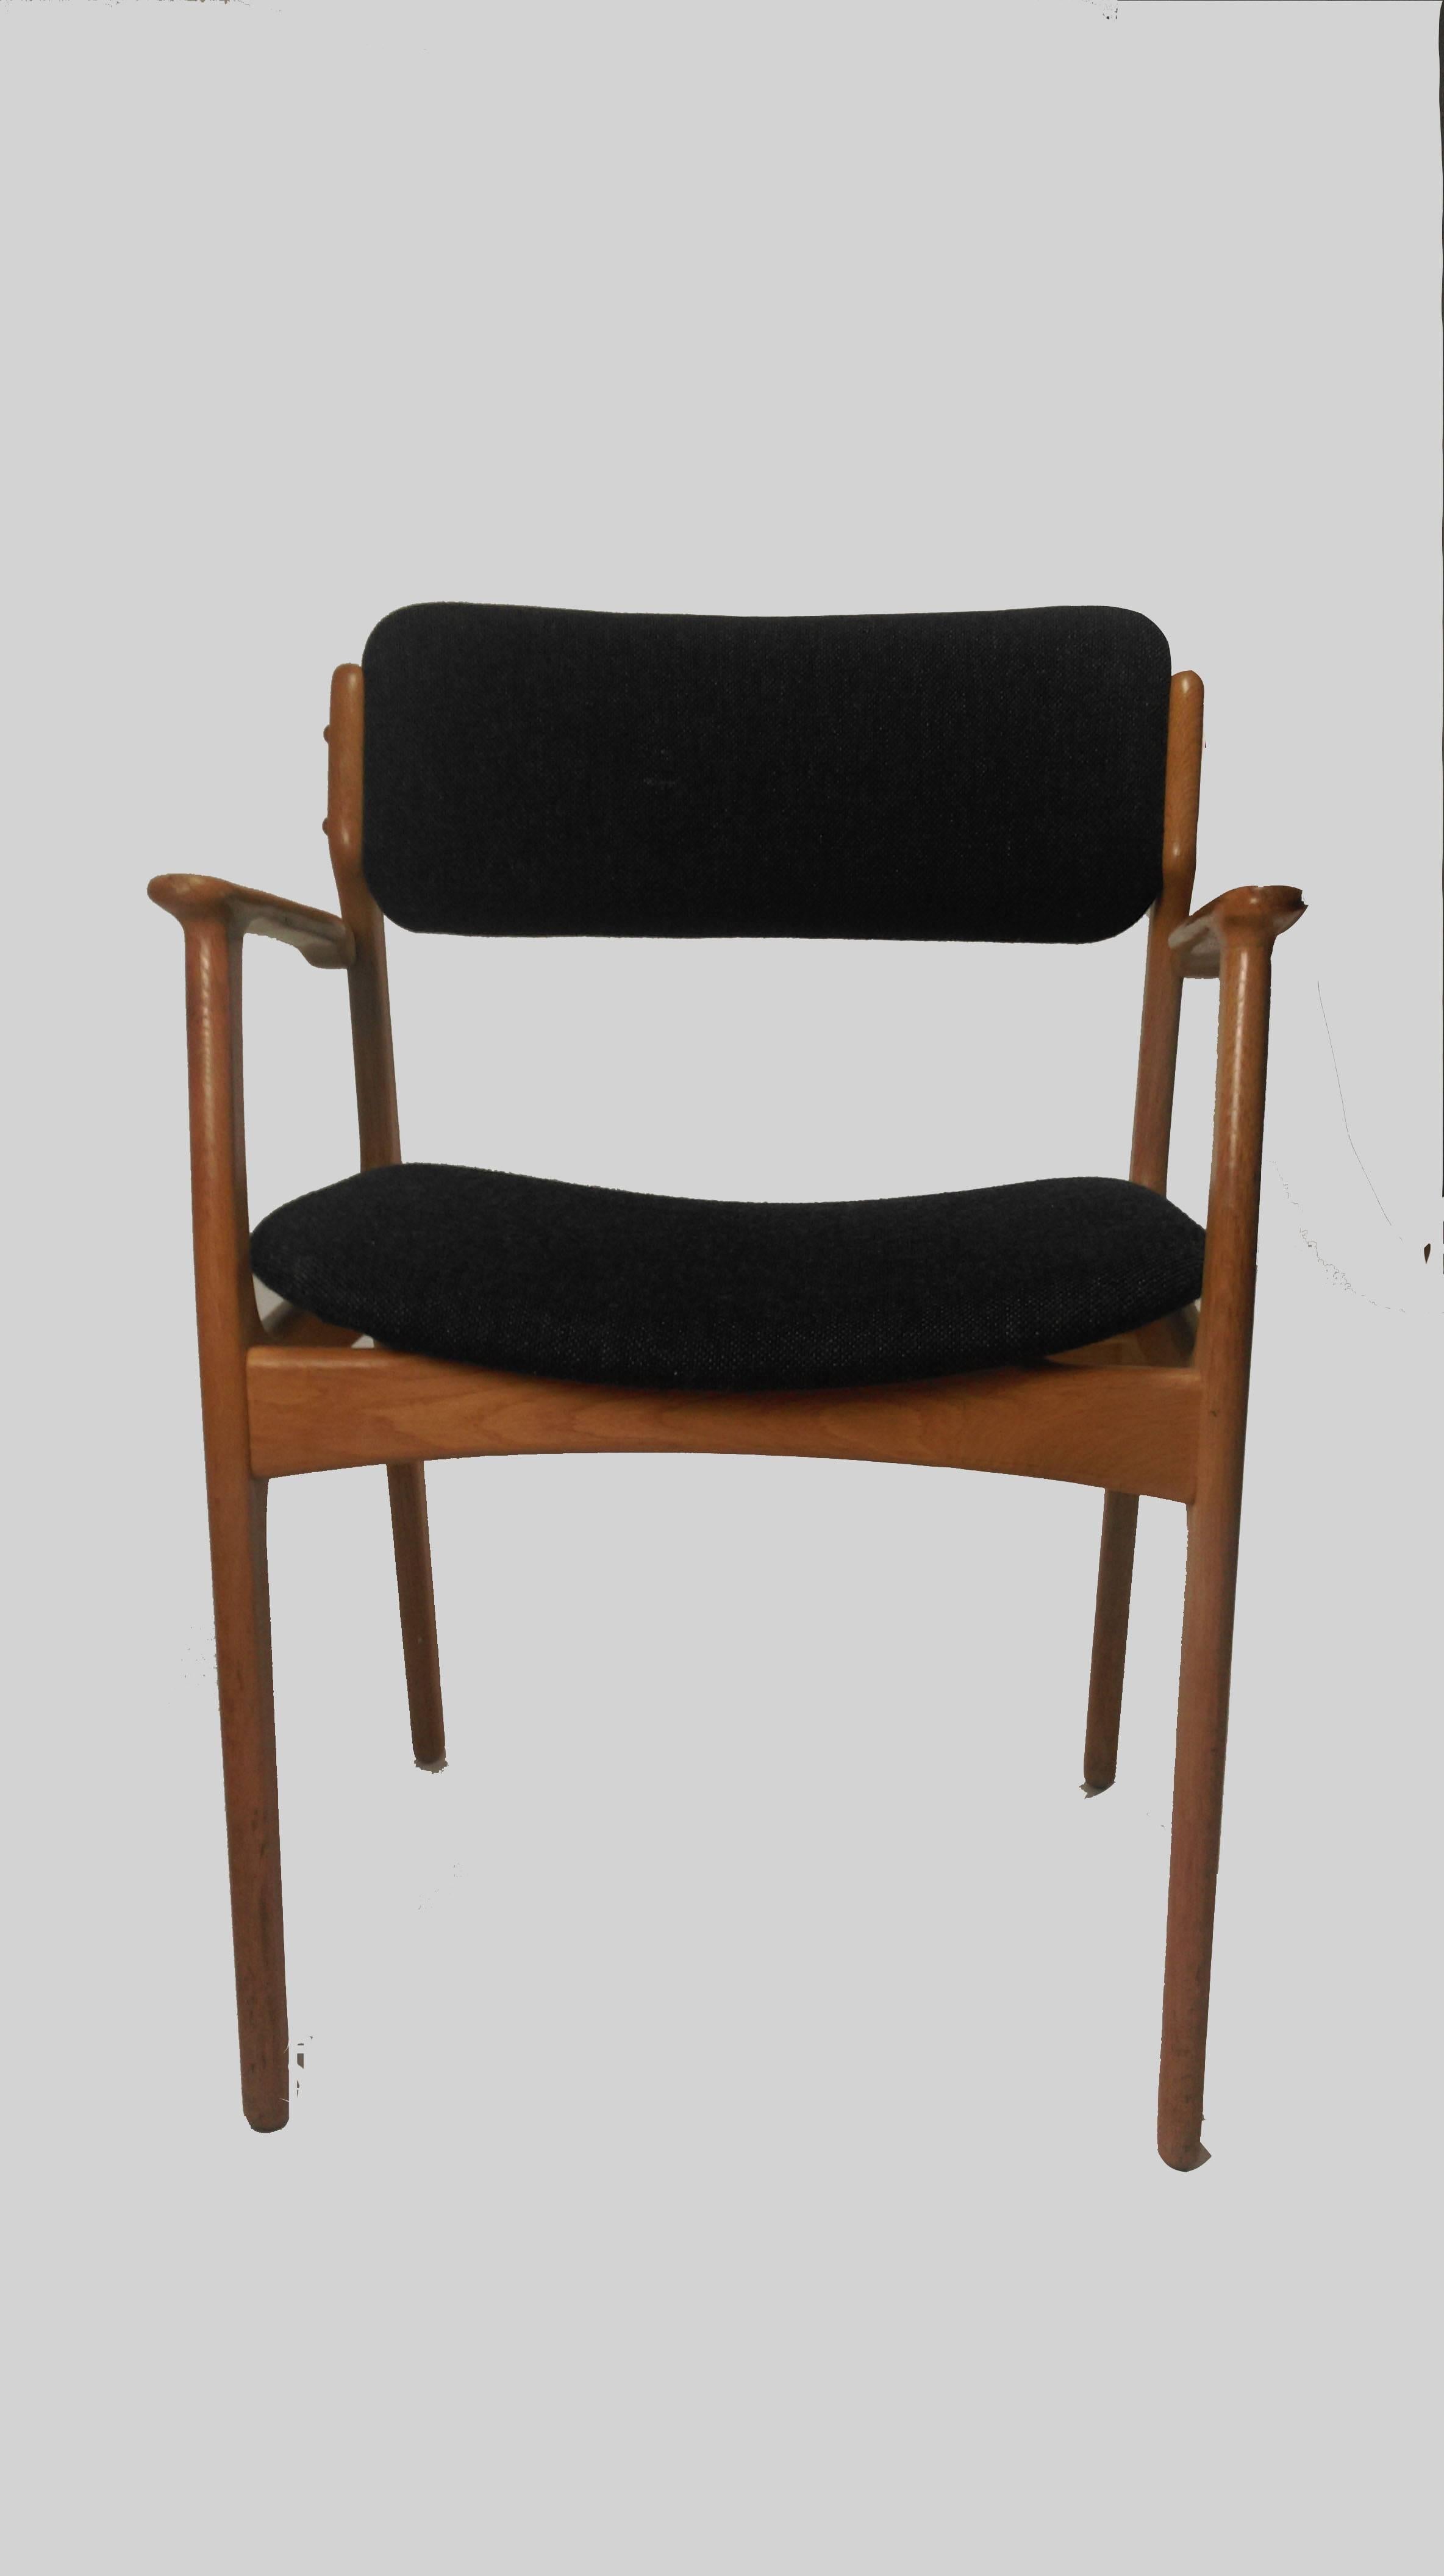 Elegants mais solides, les fauteuils Erik Buch modèle 50 présentent un excellent travail du bois qui témoigne d'une bonne conception et d'un savoir-faire artisanal.

Une construction en chêne massif avec l'élégante assise flottante et le dossier